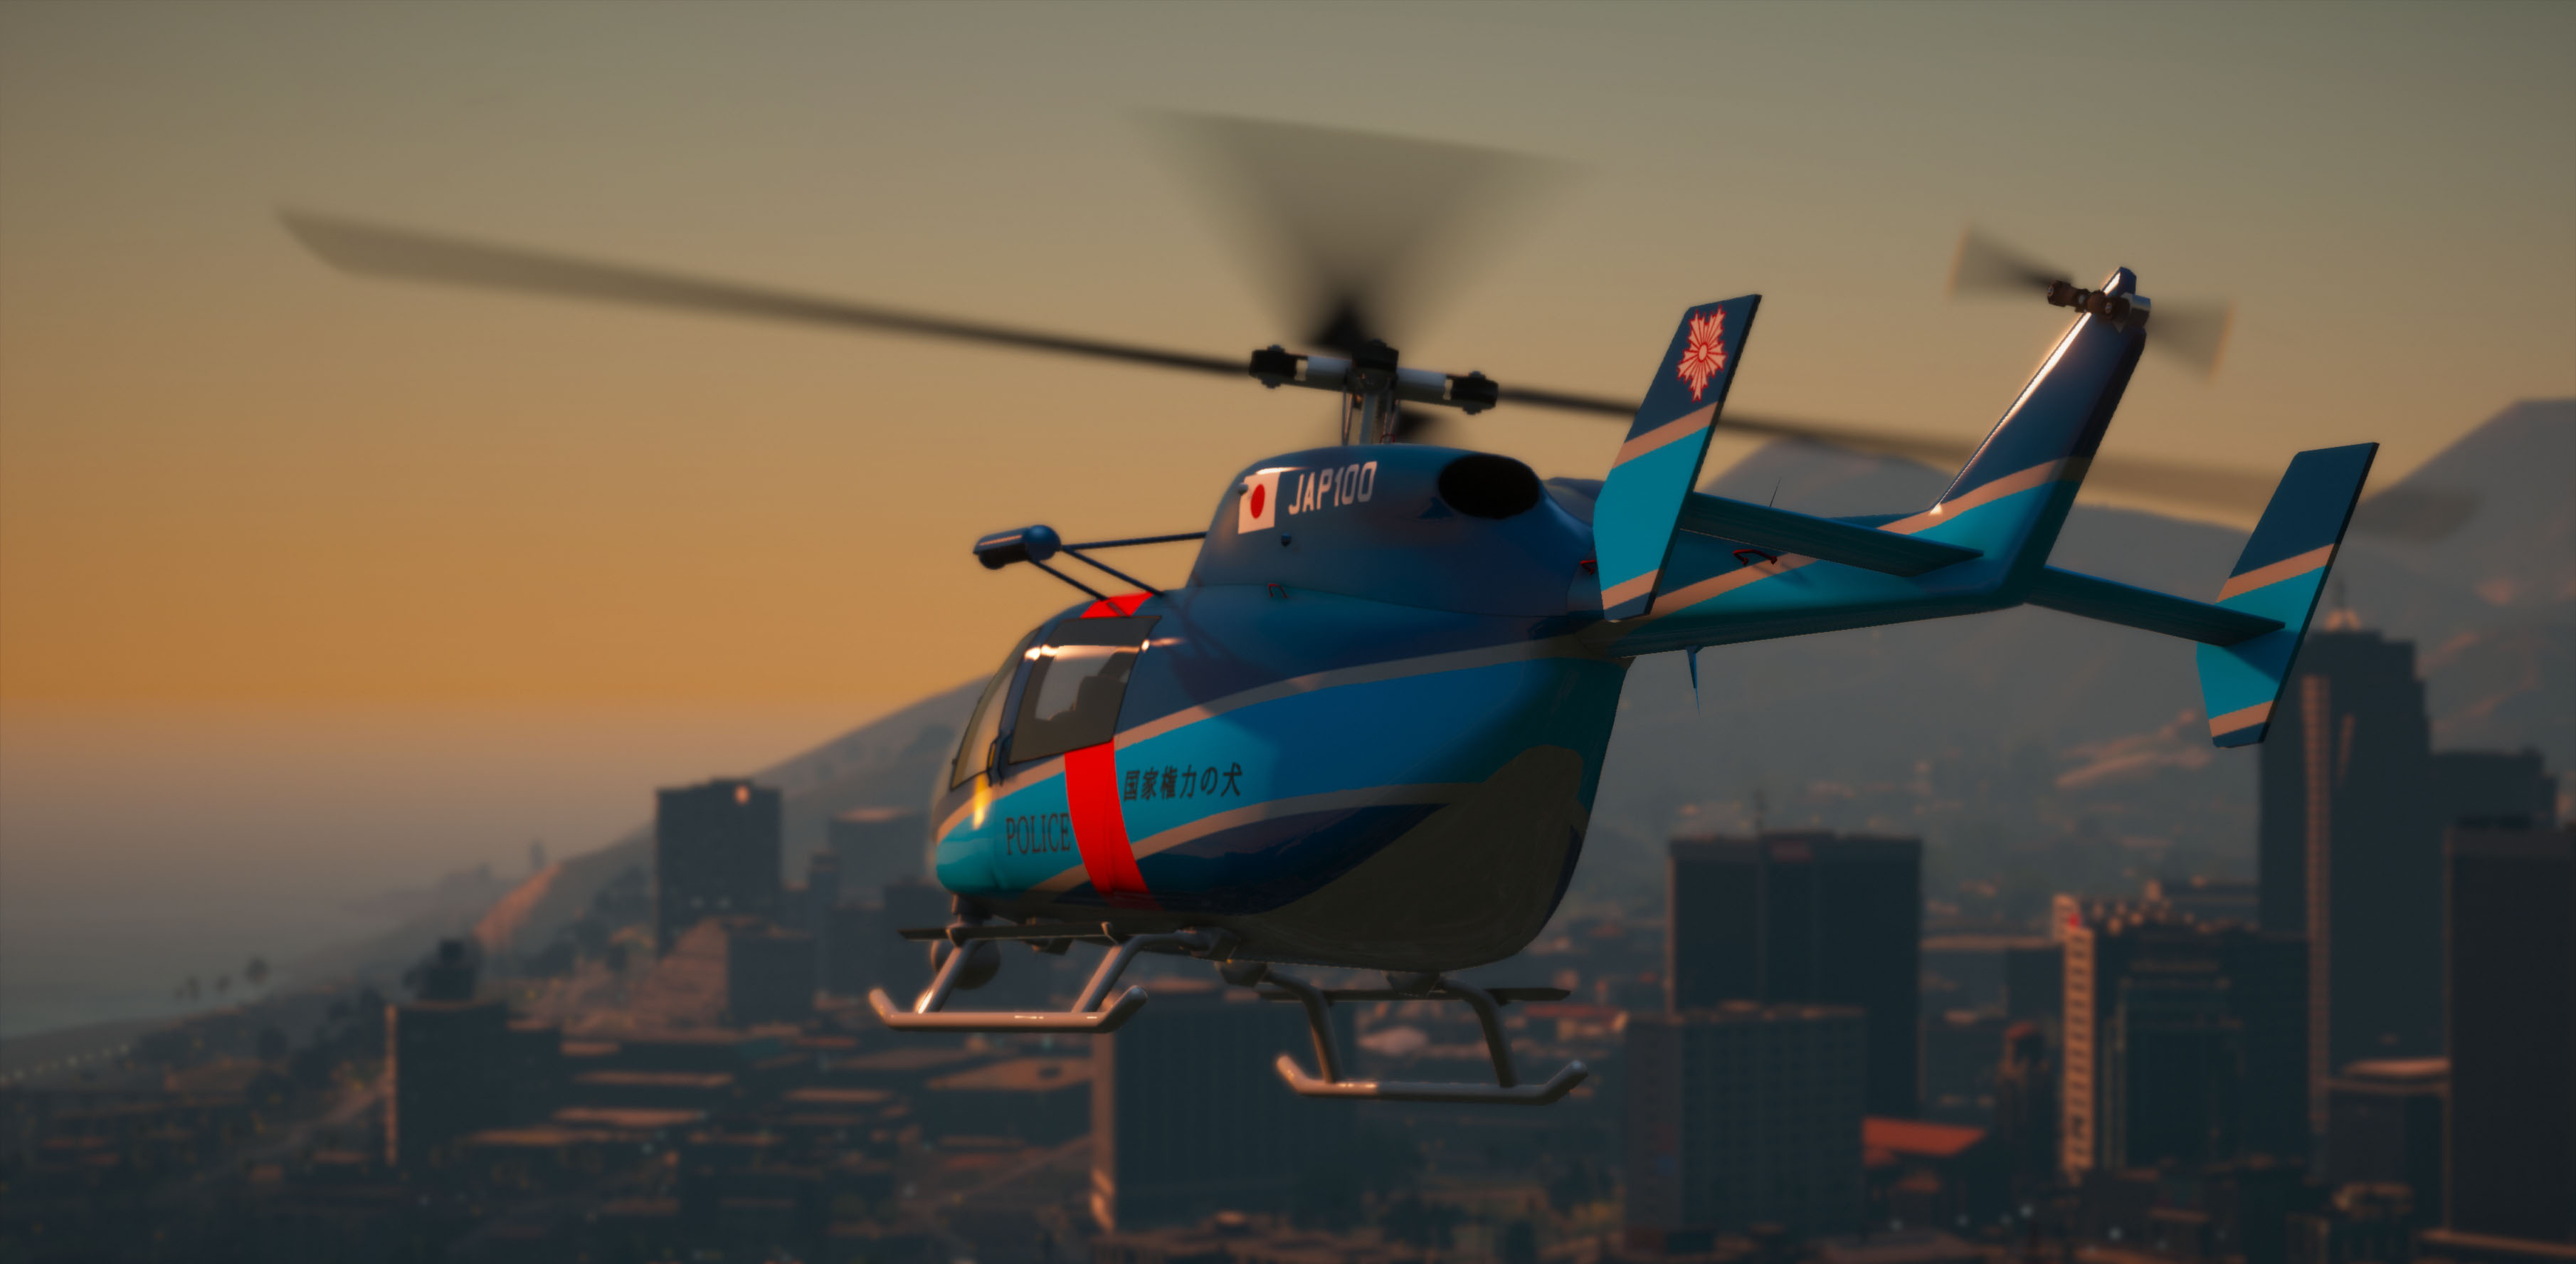 Gta 5 вертолет с прожектором фото 73